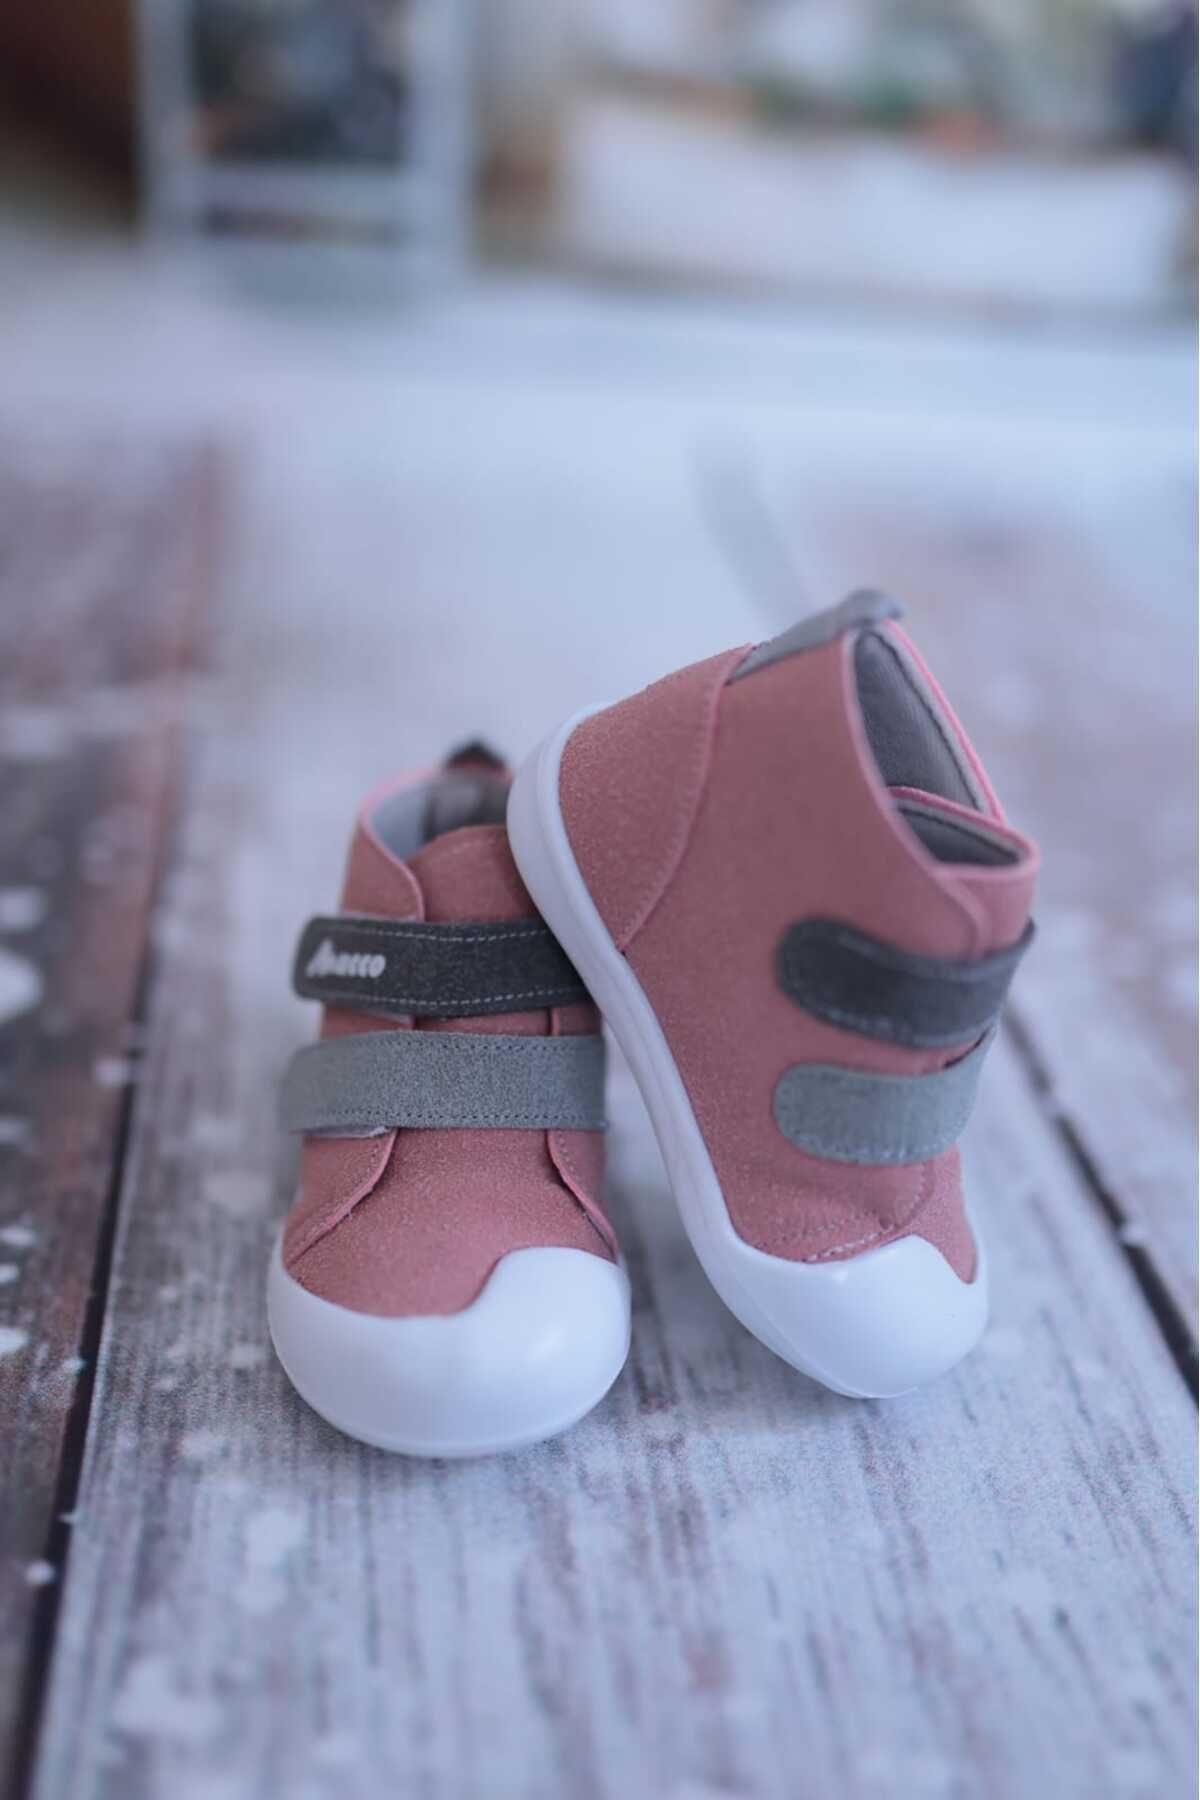 macco shoes Ilk Adım Ortopedik Kız Bebek Ayakkabısı Çocuk Ayakkabısı